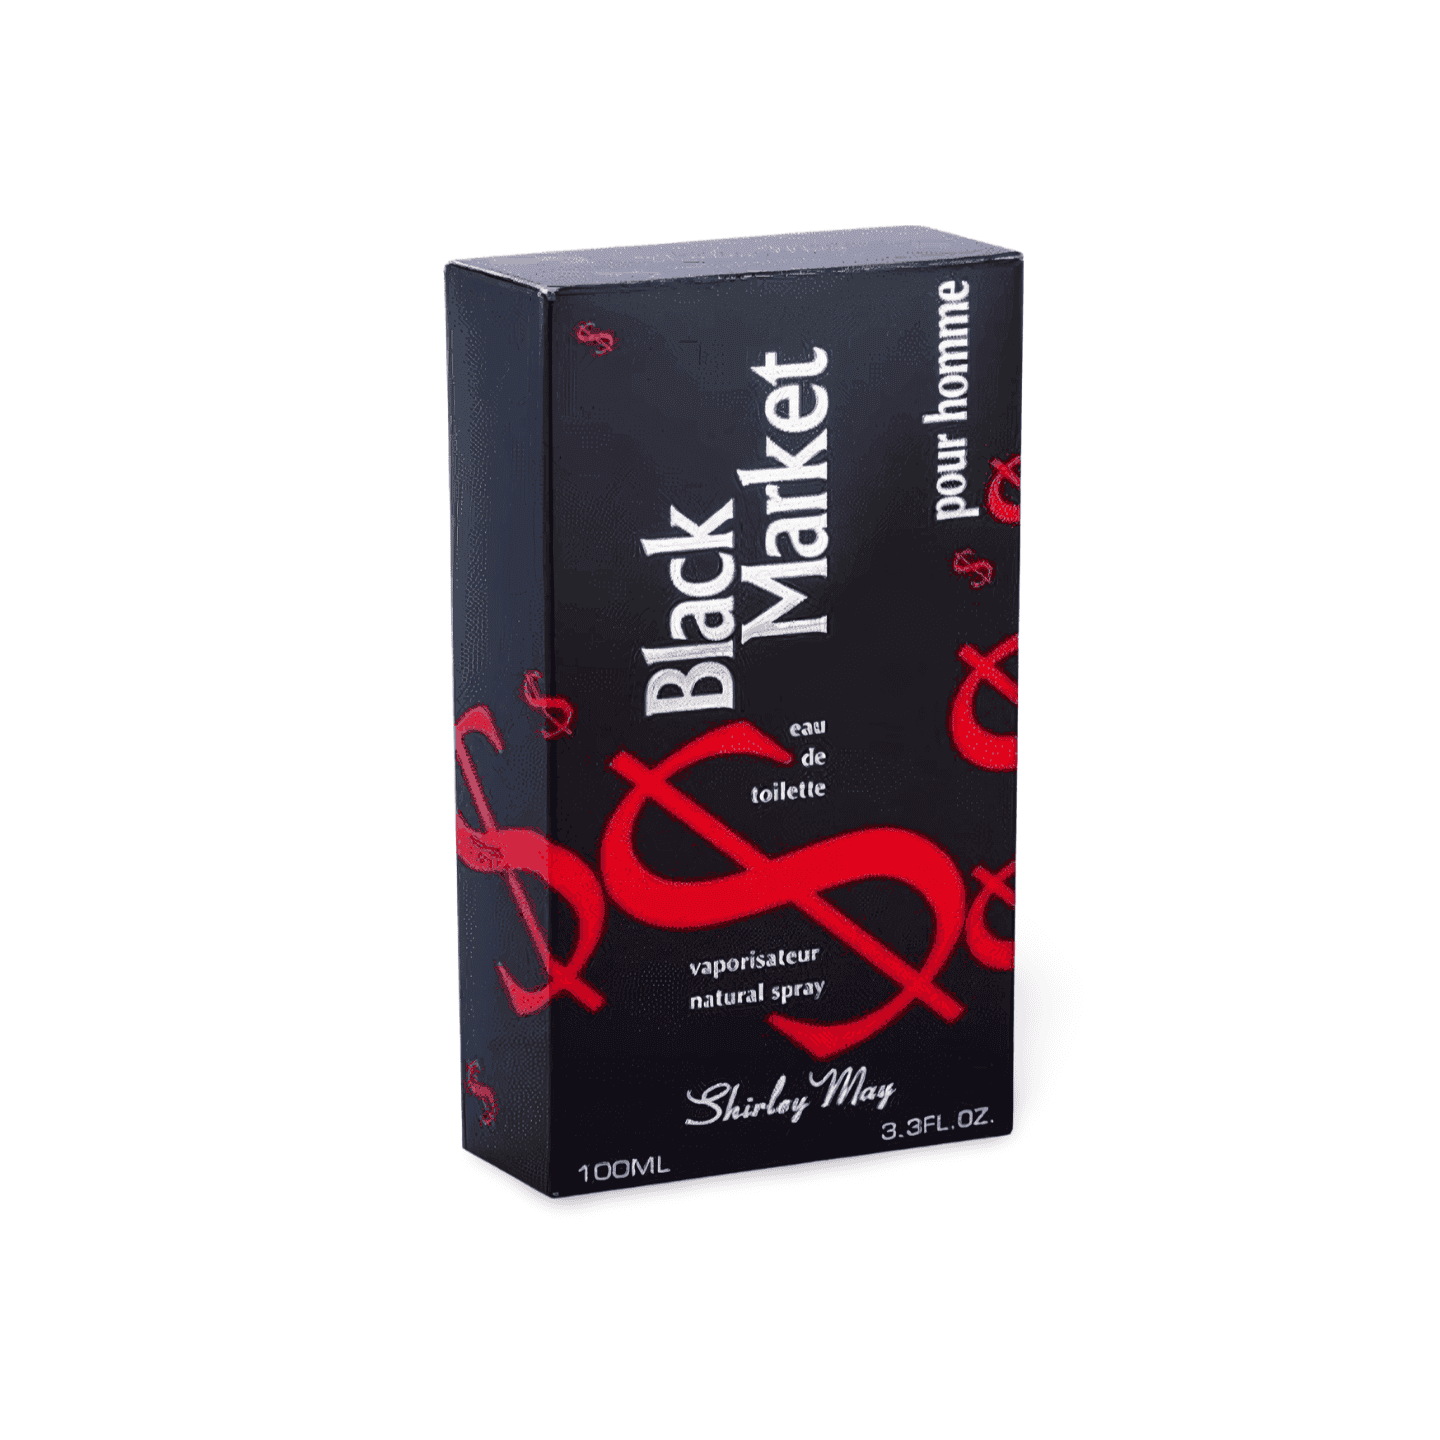 Black Market Pour Homme Perfume